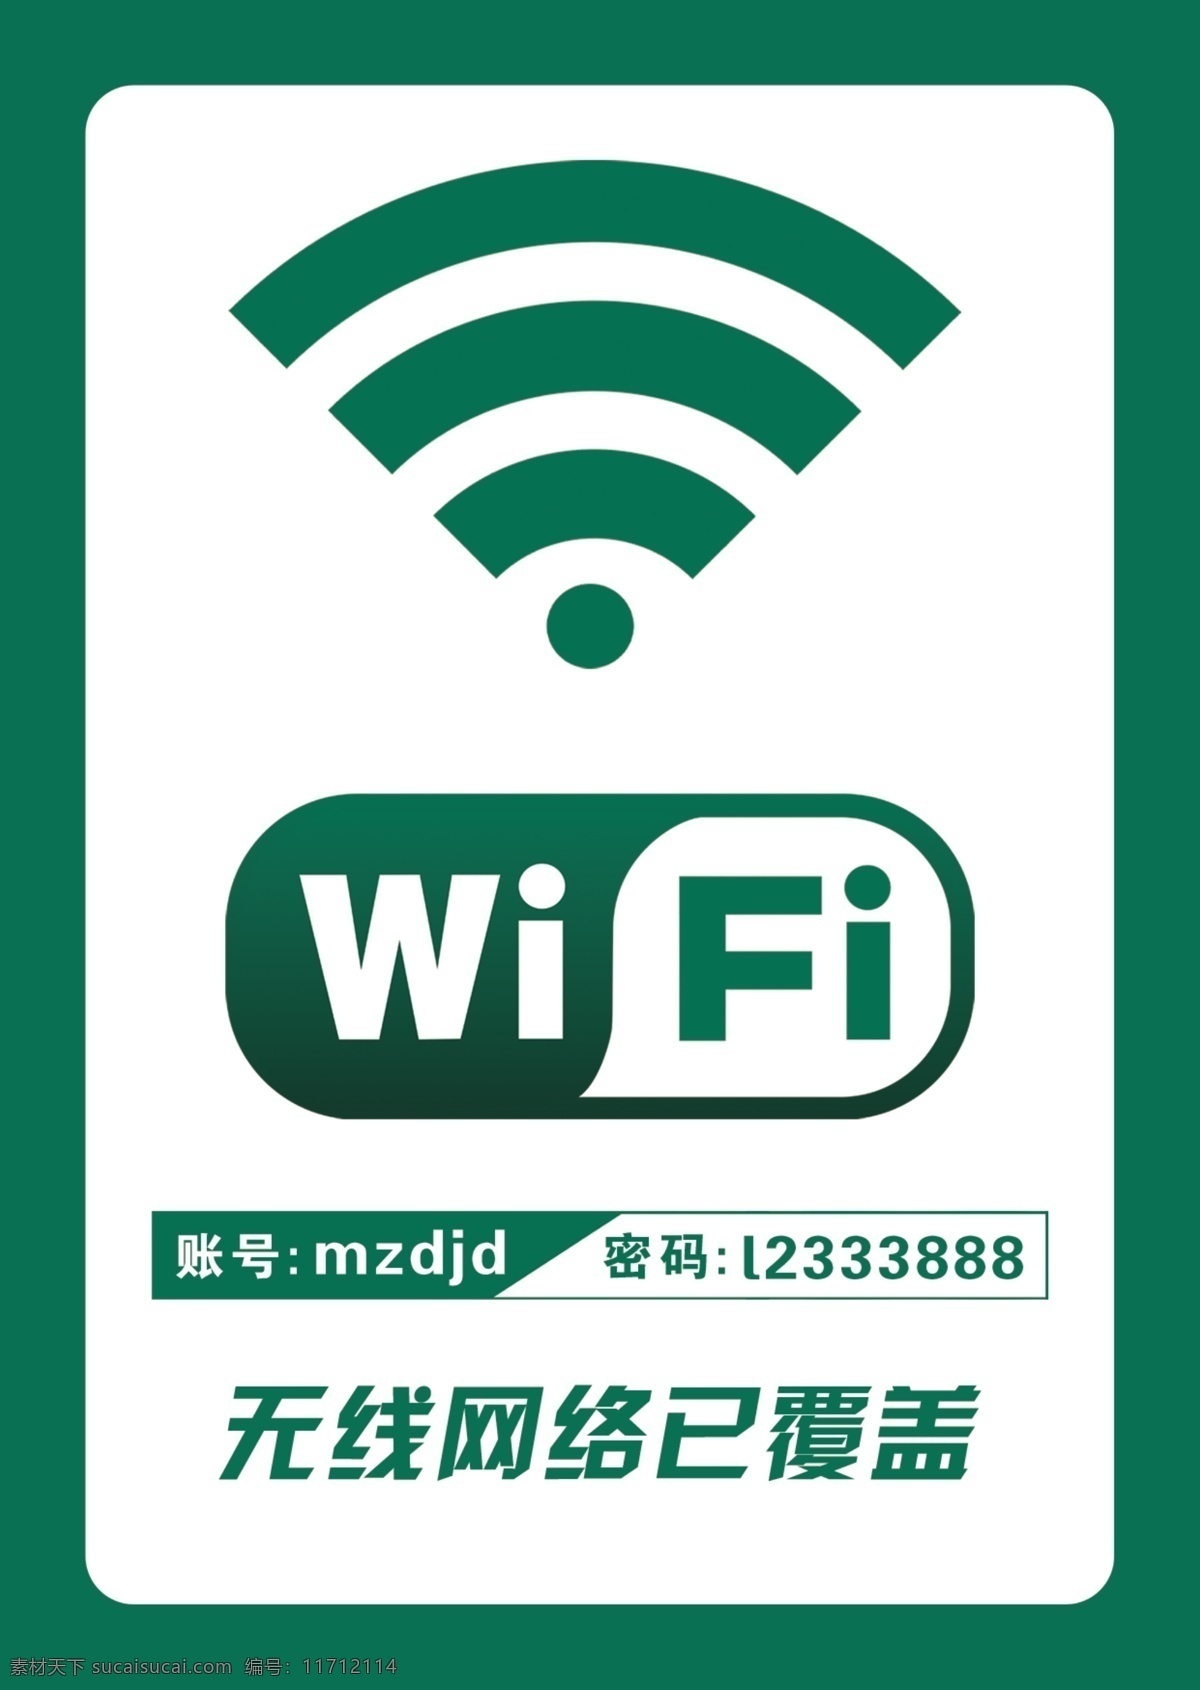 wifi海报 wifi wifi展板 无线网络 网络覆盖 免费wifi 免费 海报 温馨提示 wifi覆盖 免费上网